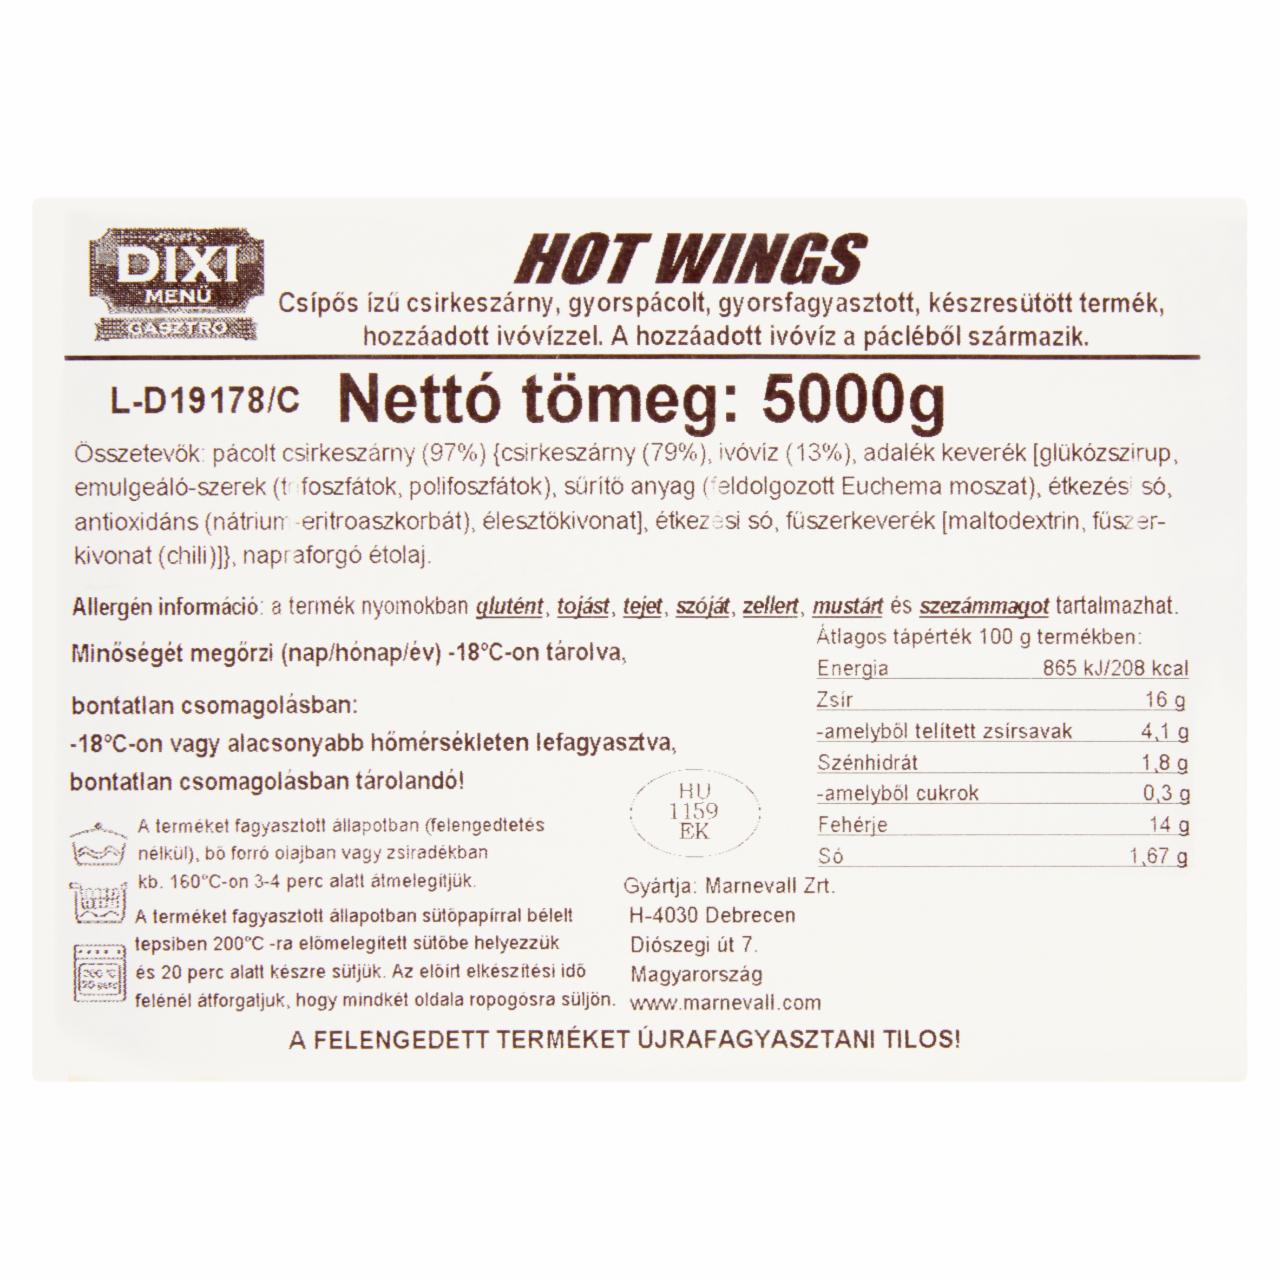 Képek - Dixi Menü Gasztro Hot Wings gyorsfagyasztott csípős ízű csirkeszárny 5000 g